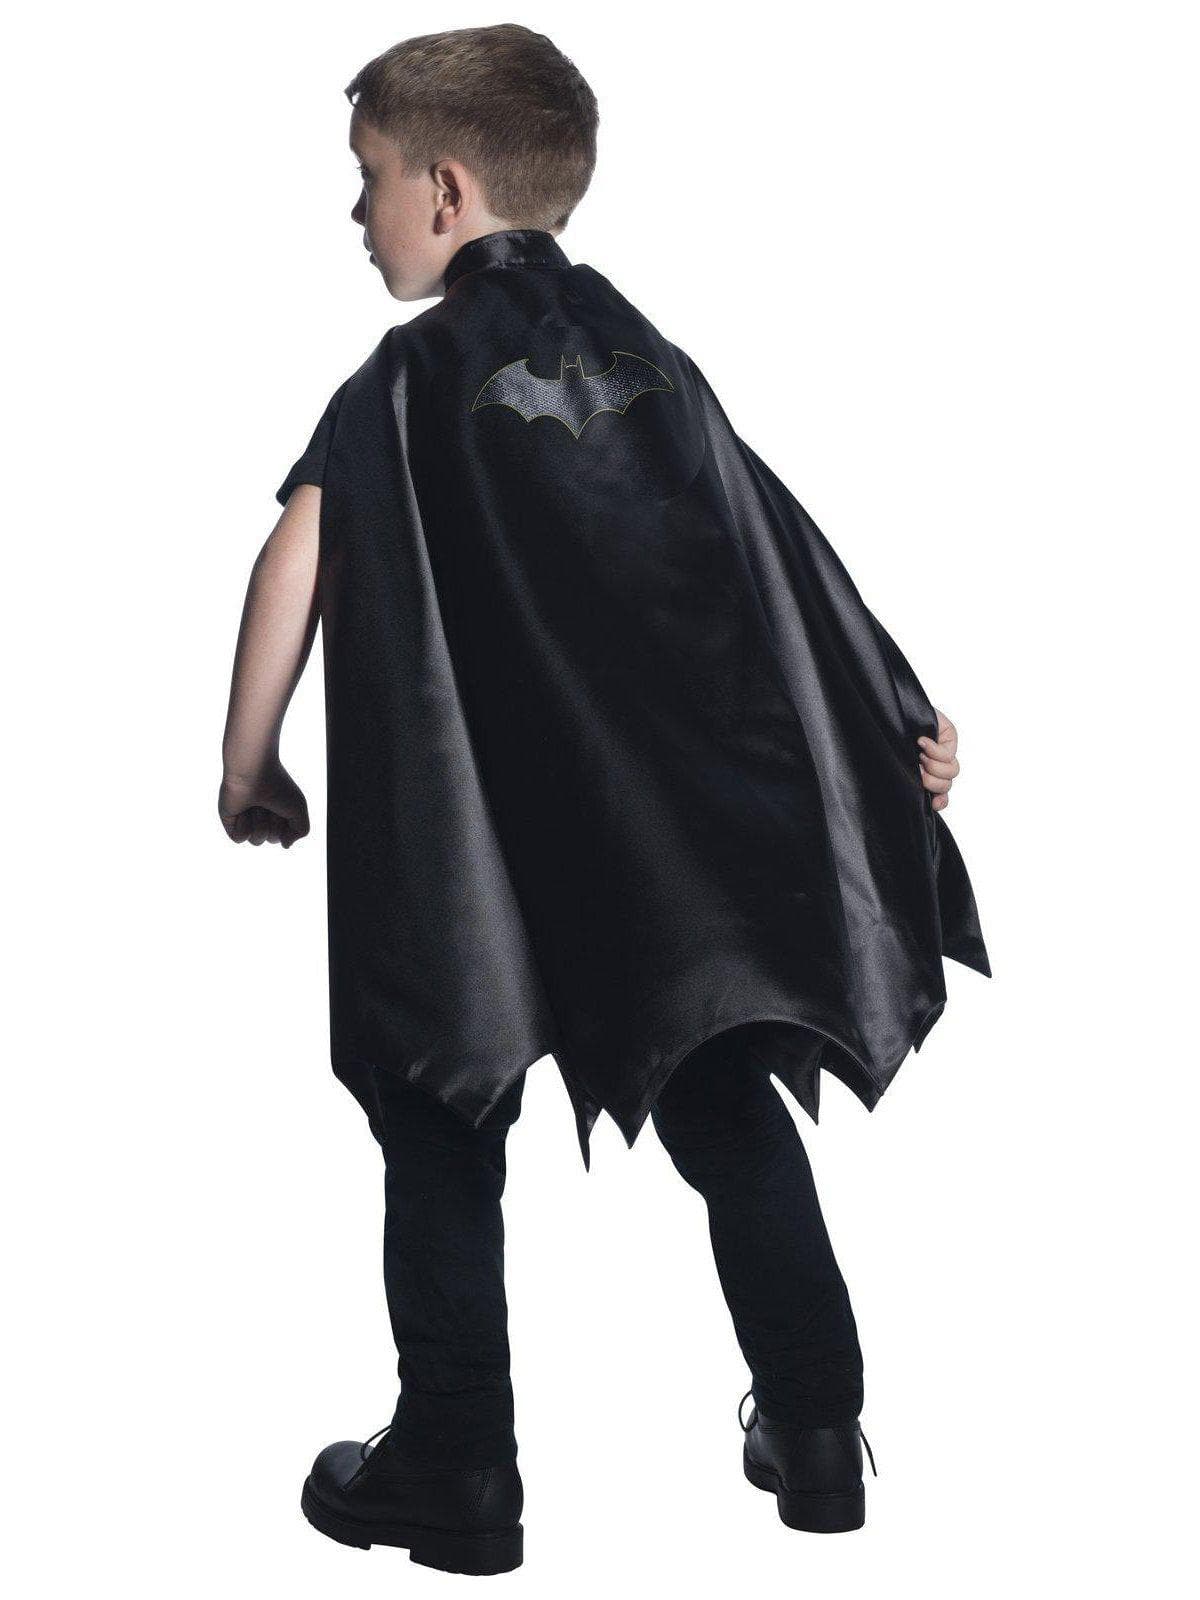 Boys' Black DC Comics Batman Cape - Deluxe - costumes.com